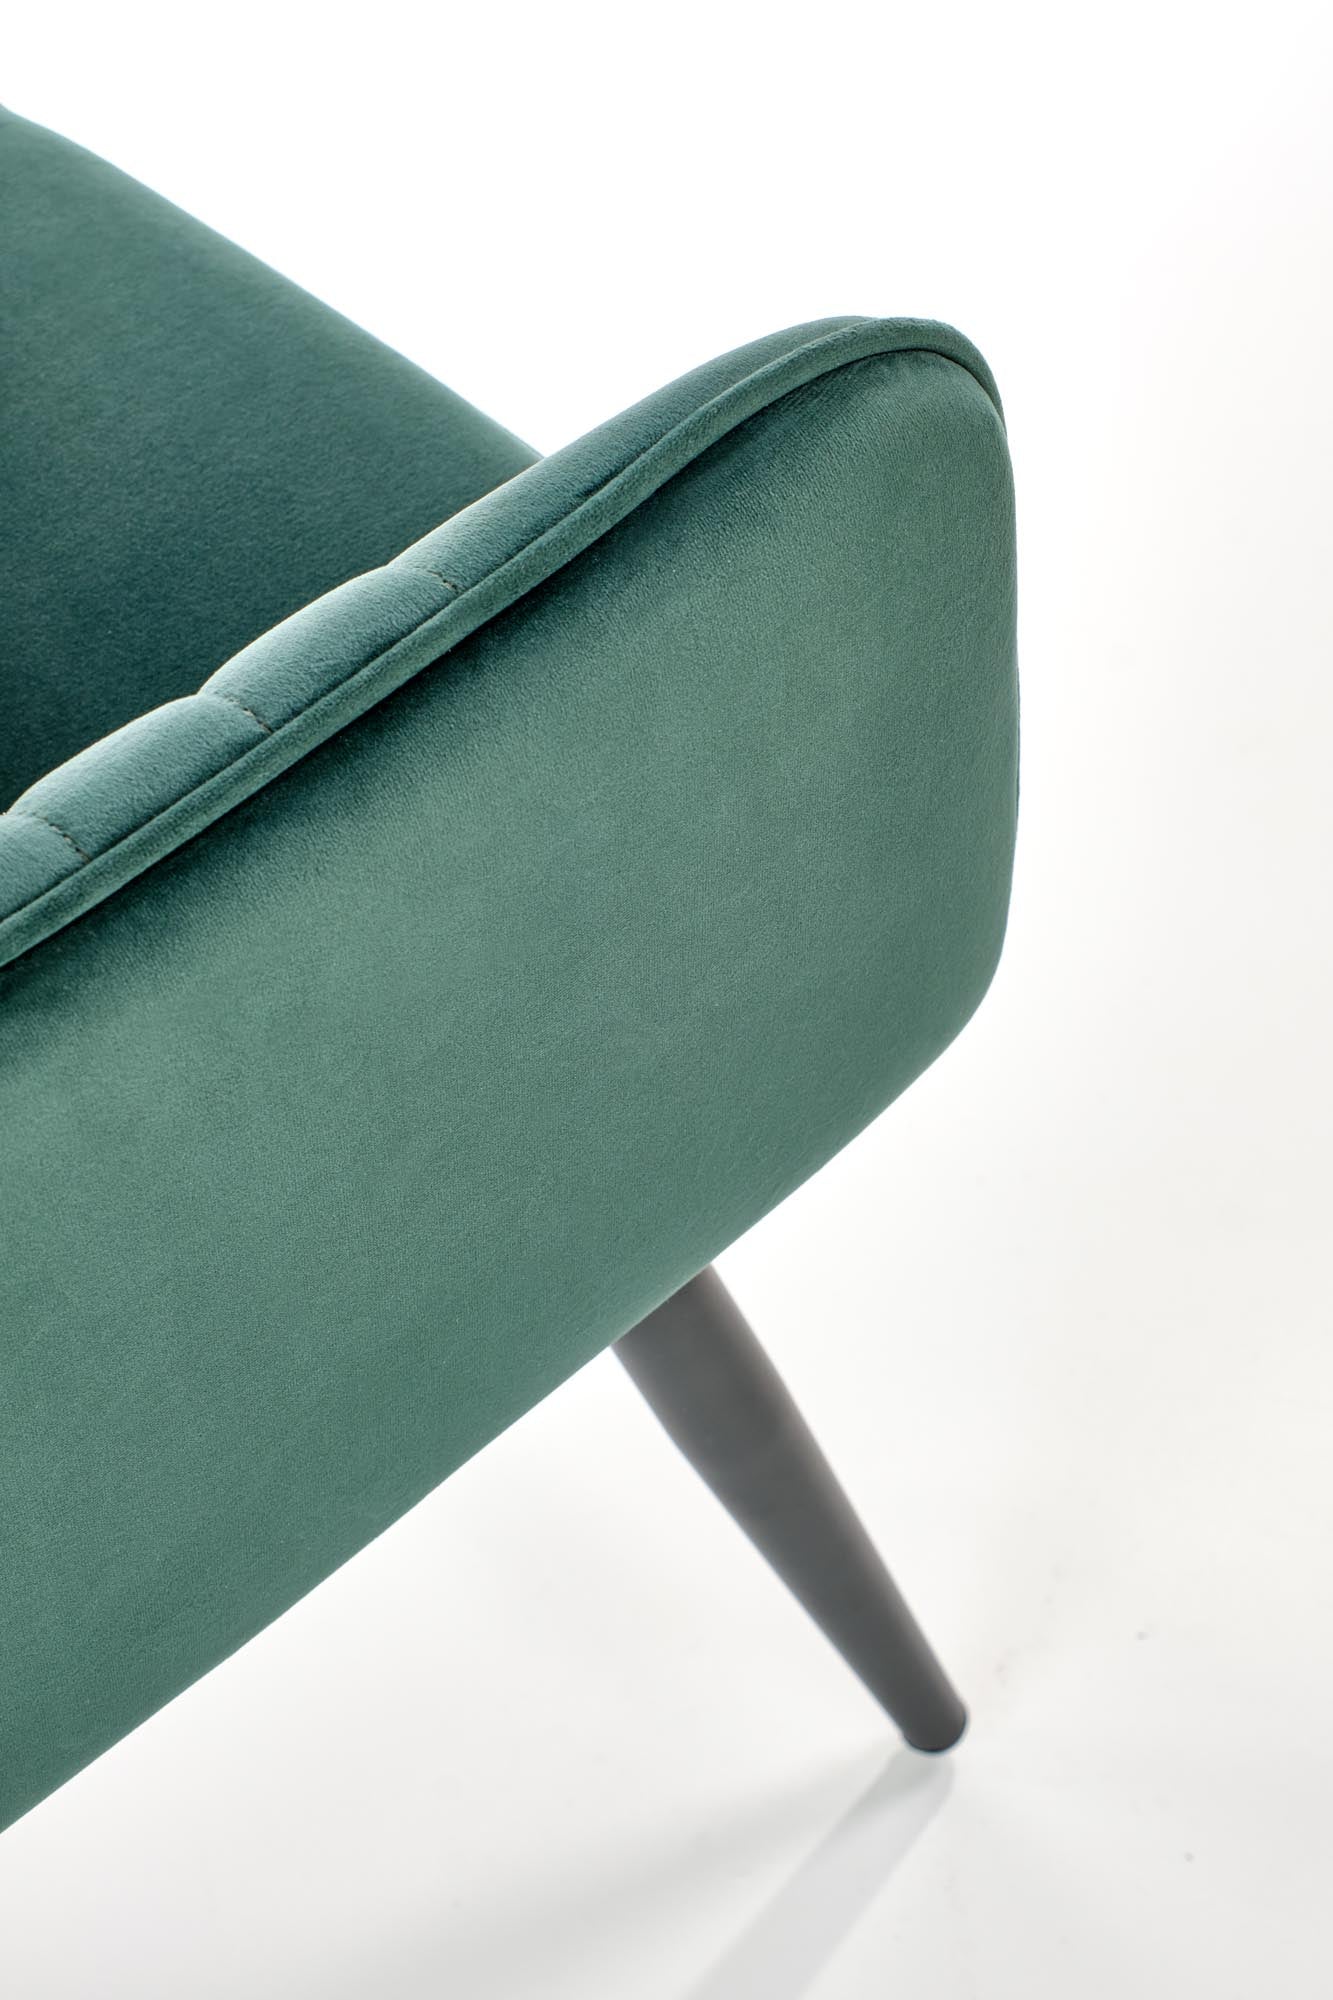 Lathan szék (sötétzöld)